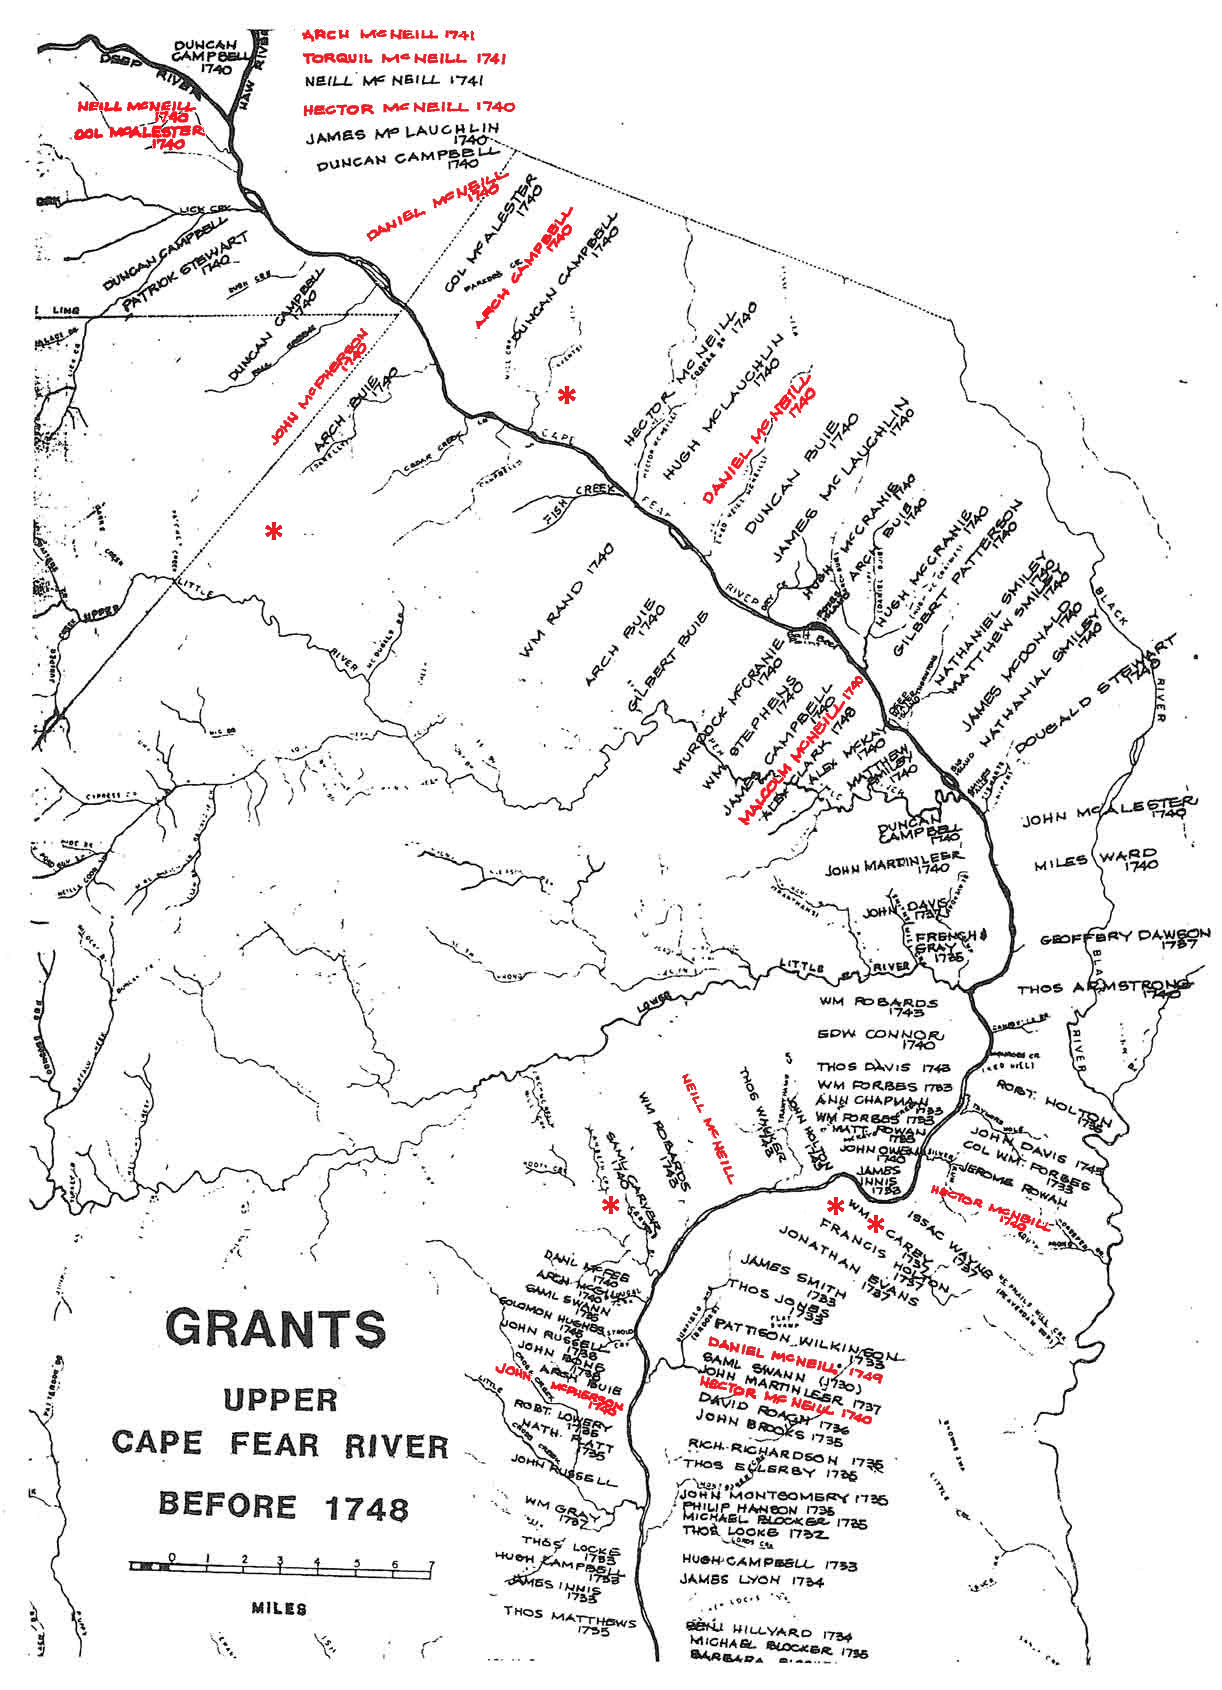 Pre-1748 grant map